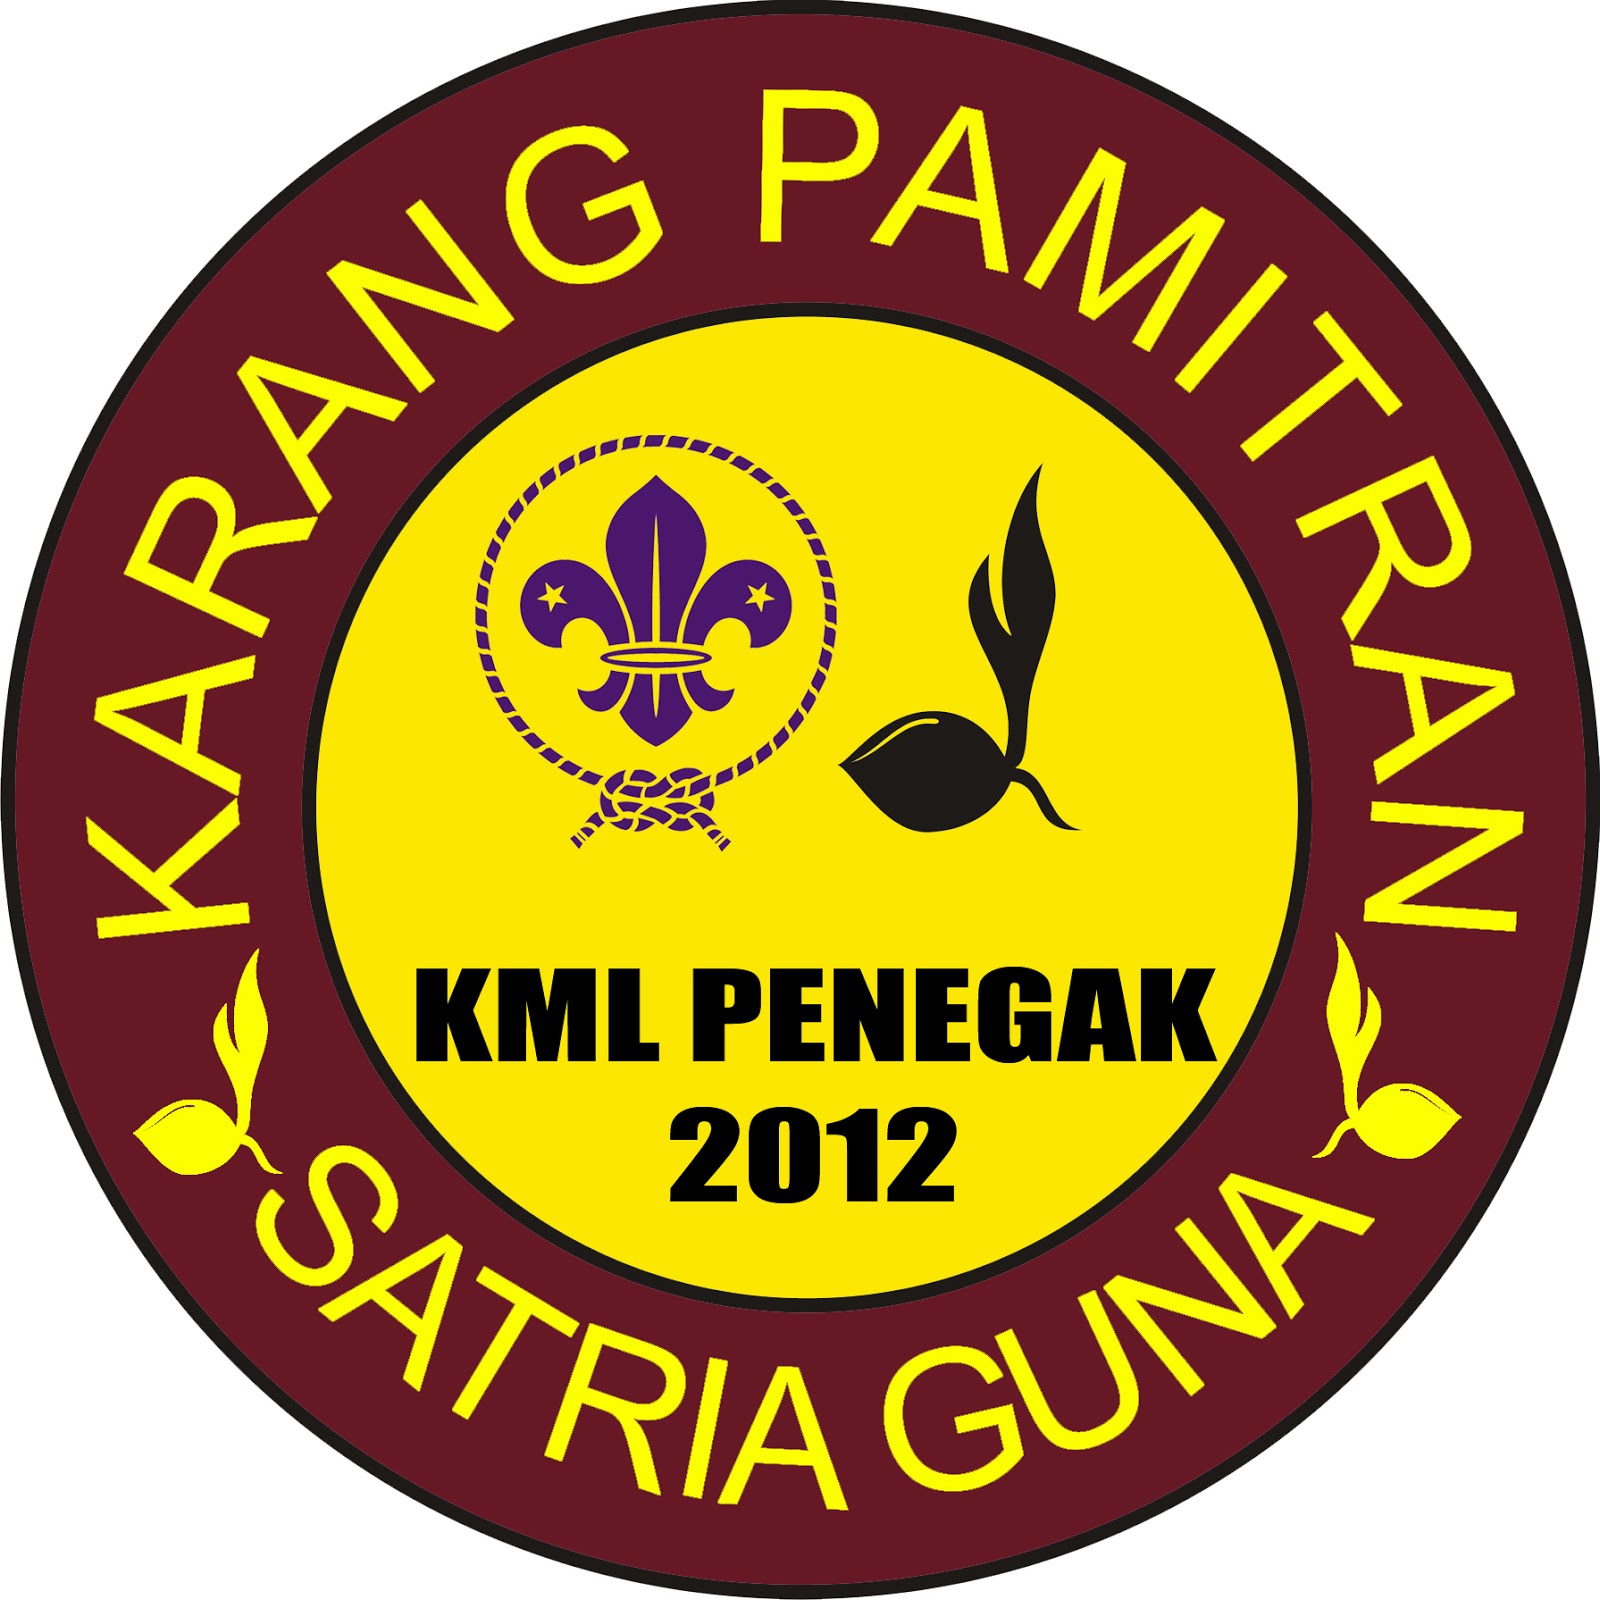  Logo  Karang Pamitran Final Pembina Pramuka  Penegak 